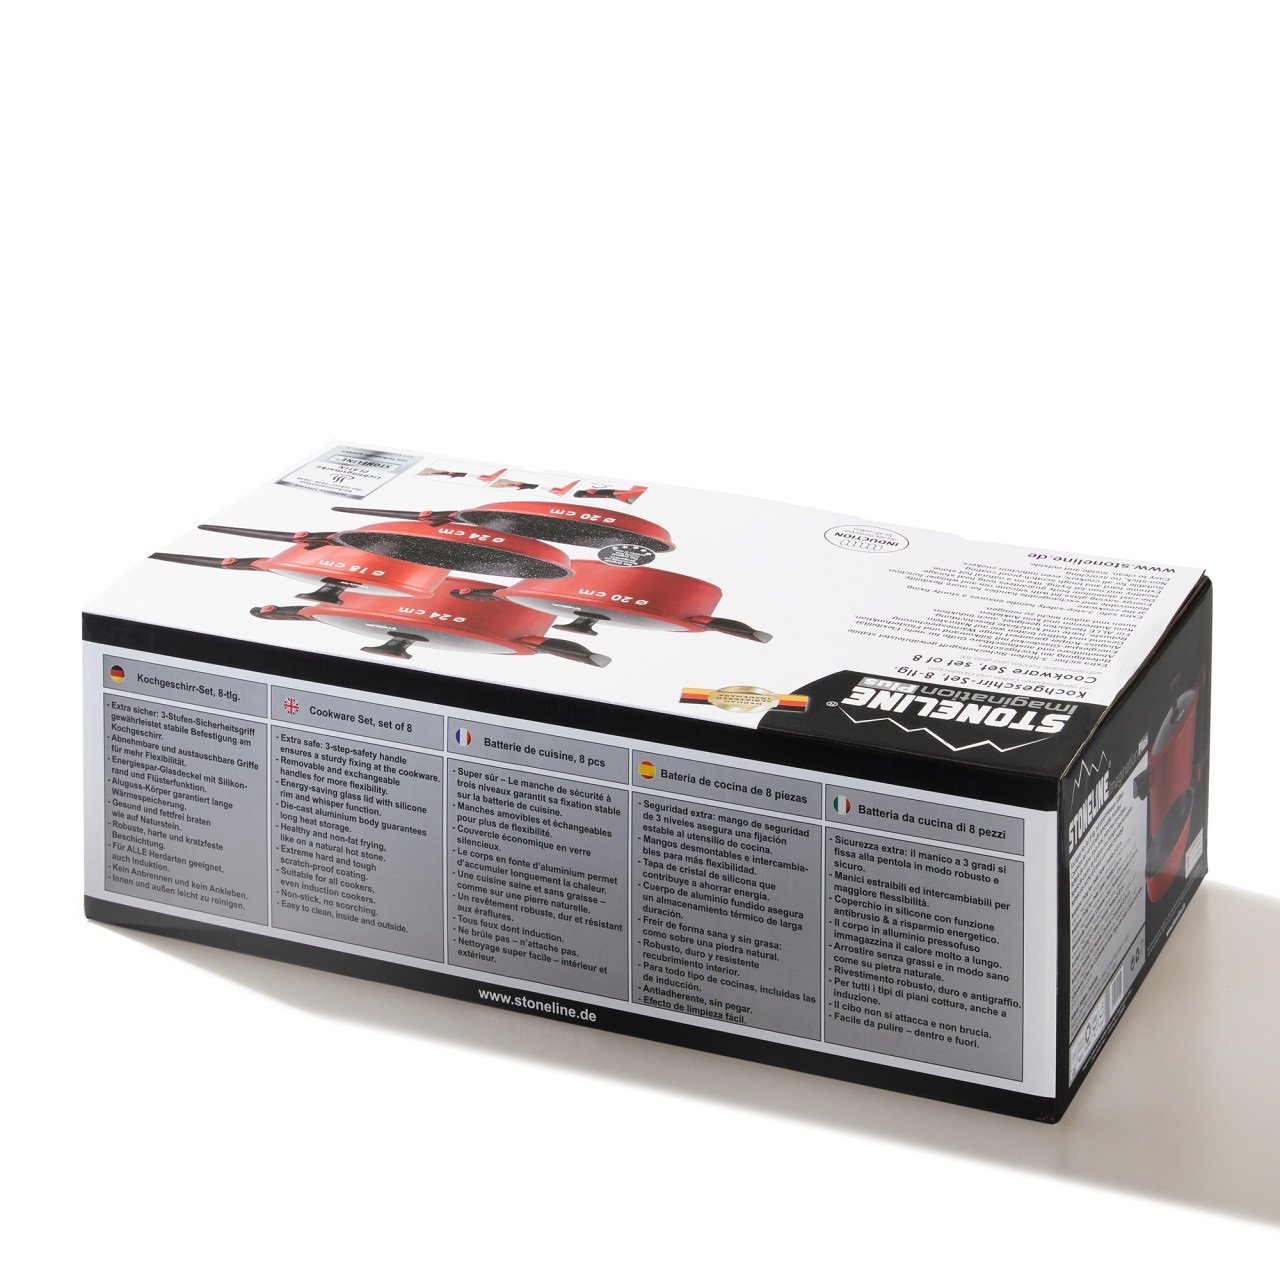 STONELINE® Imagination PLUS batería de cocina, 8 piezas, con asas extraíbles, rojo